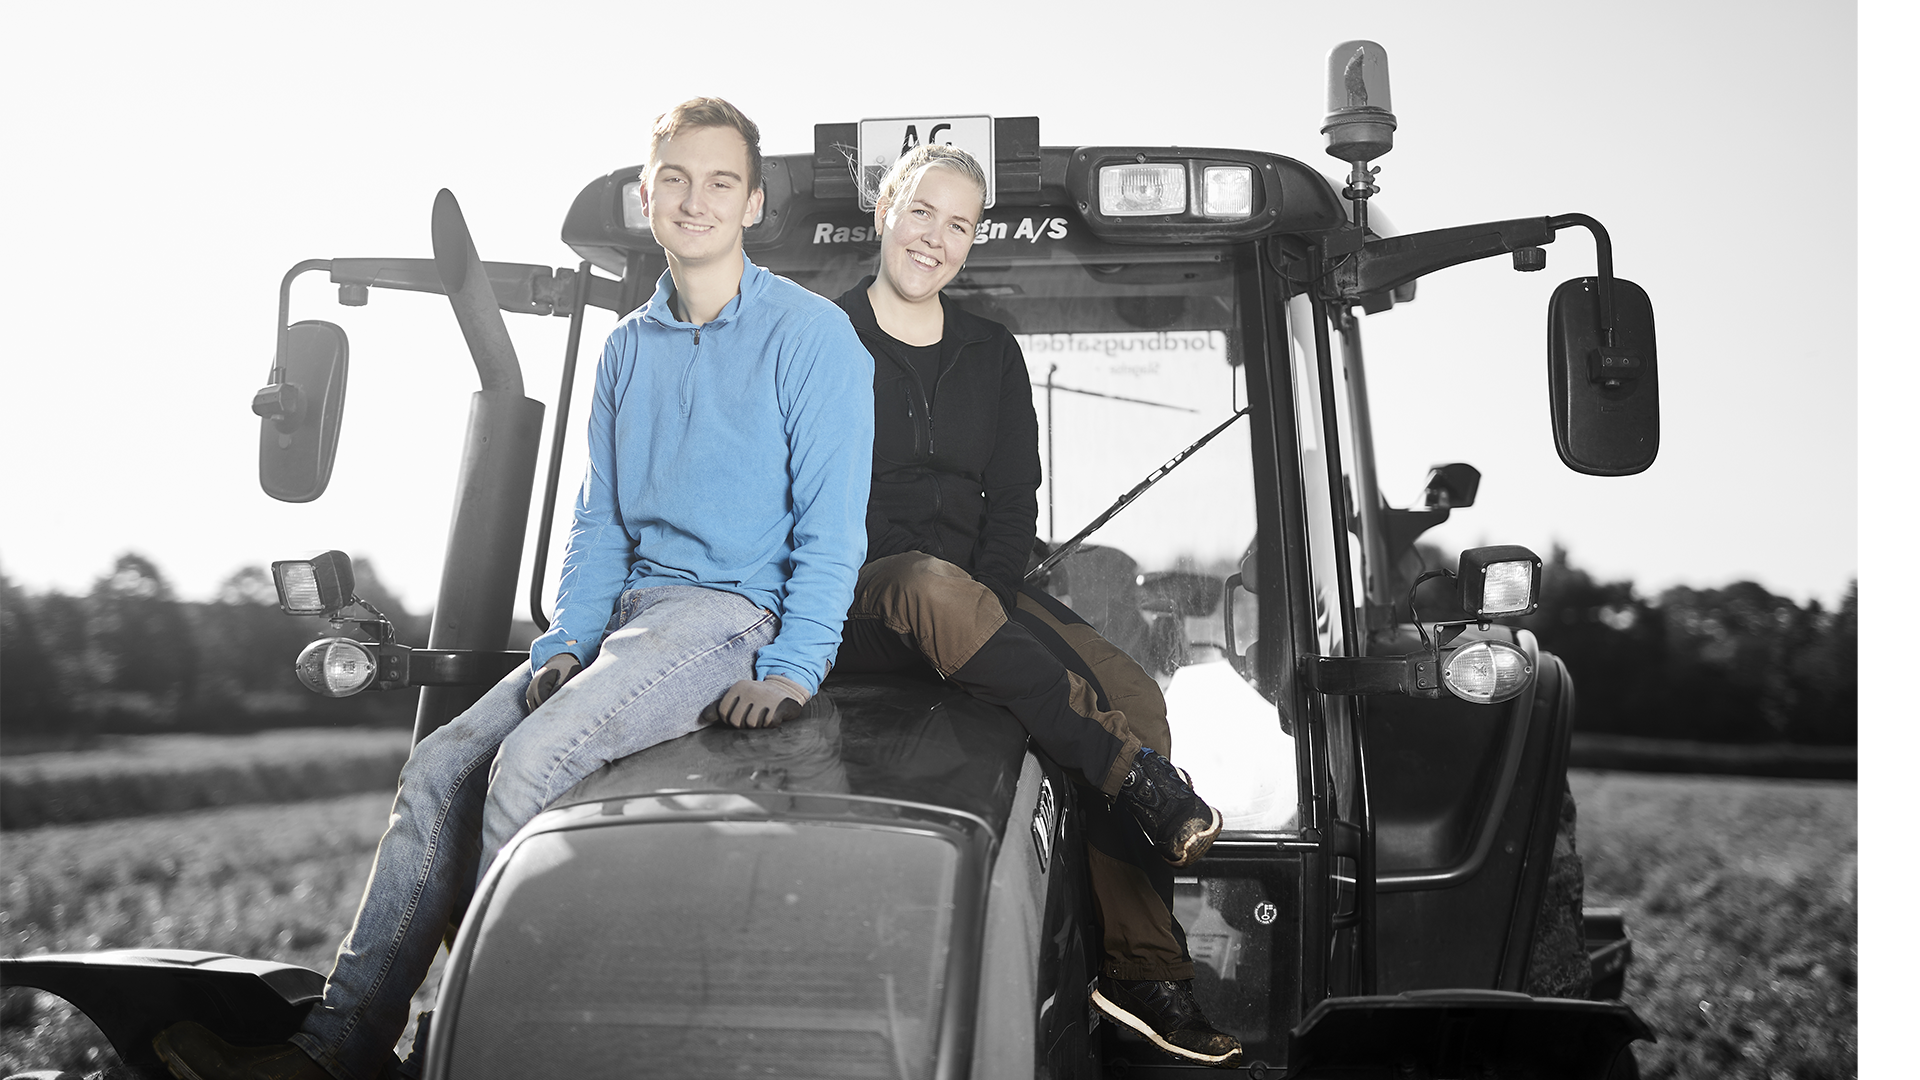 ZBC uddannelser inden for landbrug og gartneri i Slagelse - landmandselever på traktor